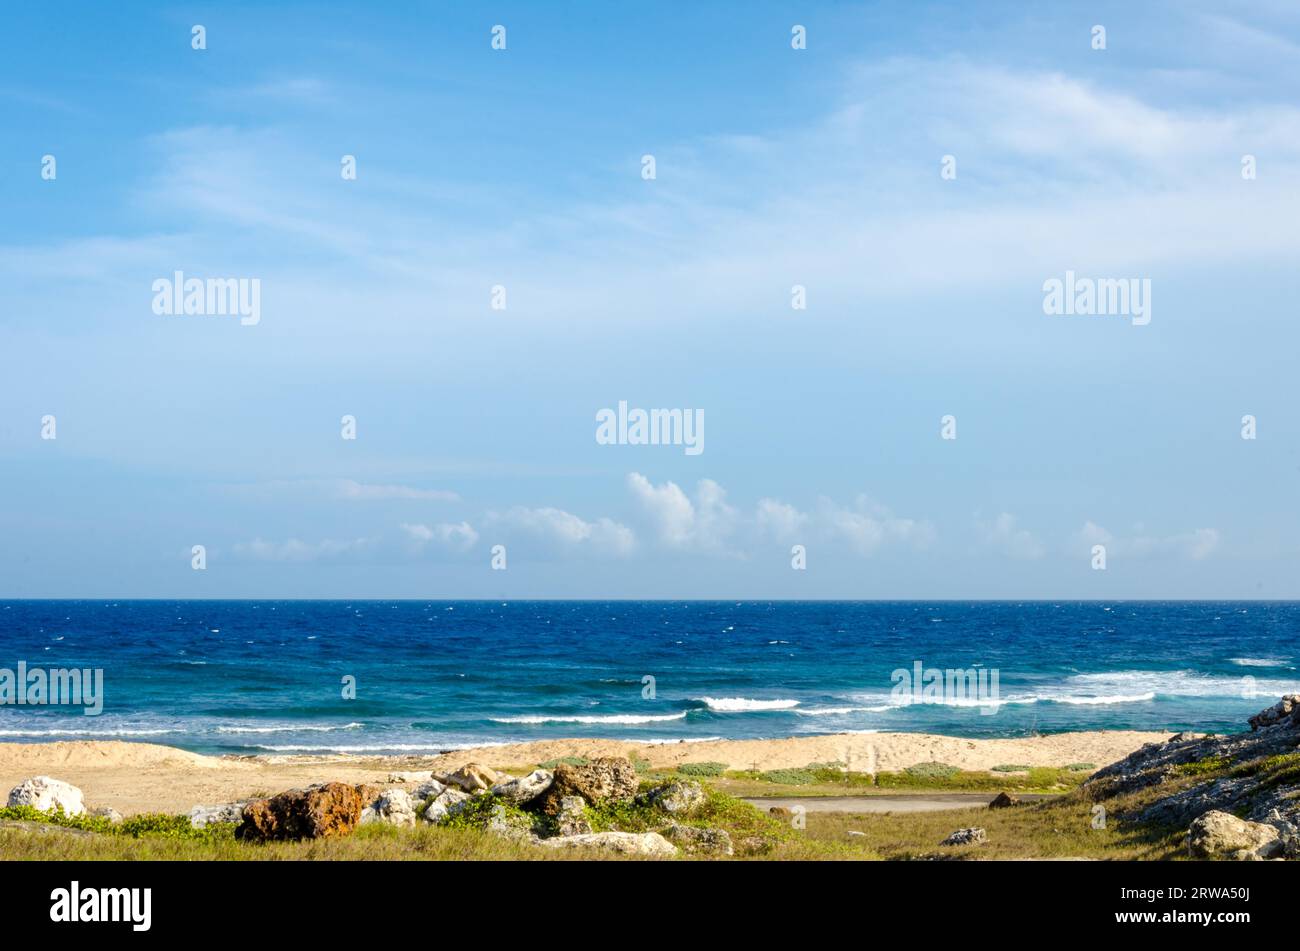 Sec et aride désert paysage avec vue sur la mer en arrière-plan dans les Caraïbes à l'île d'Aruba Banque D'Images